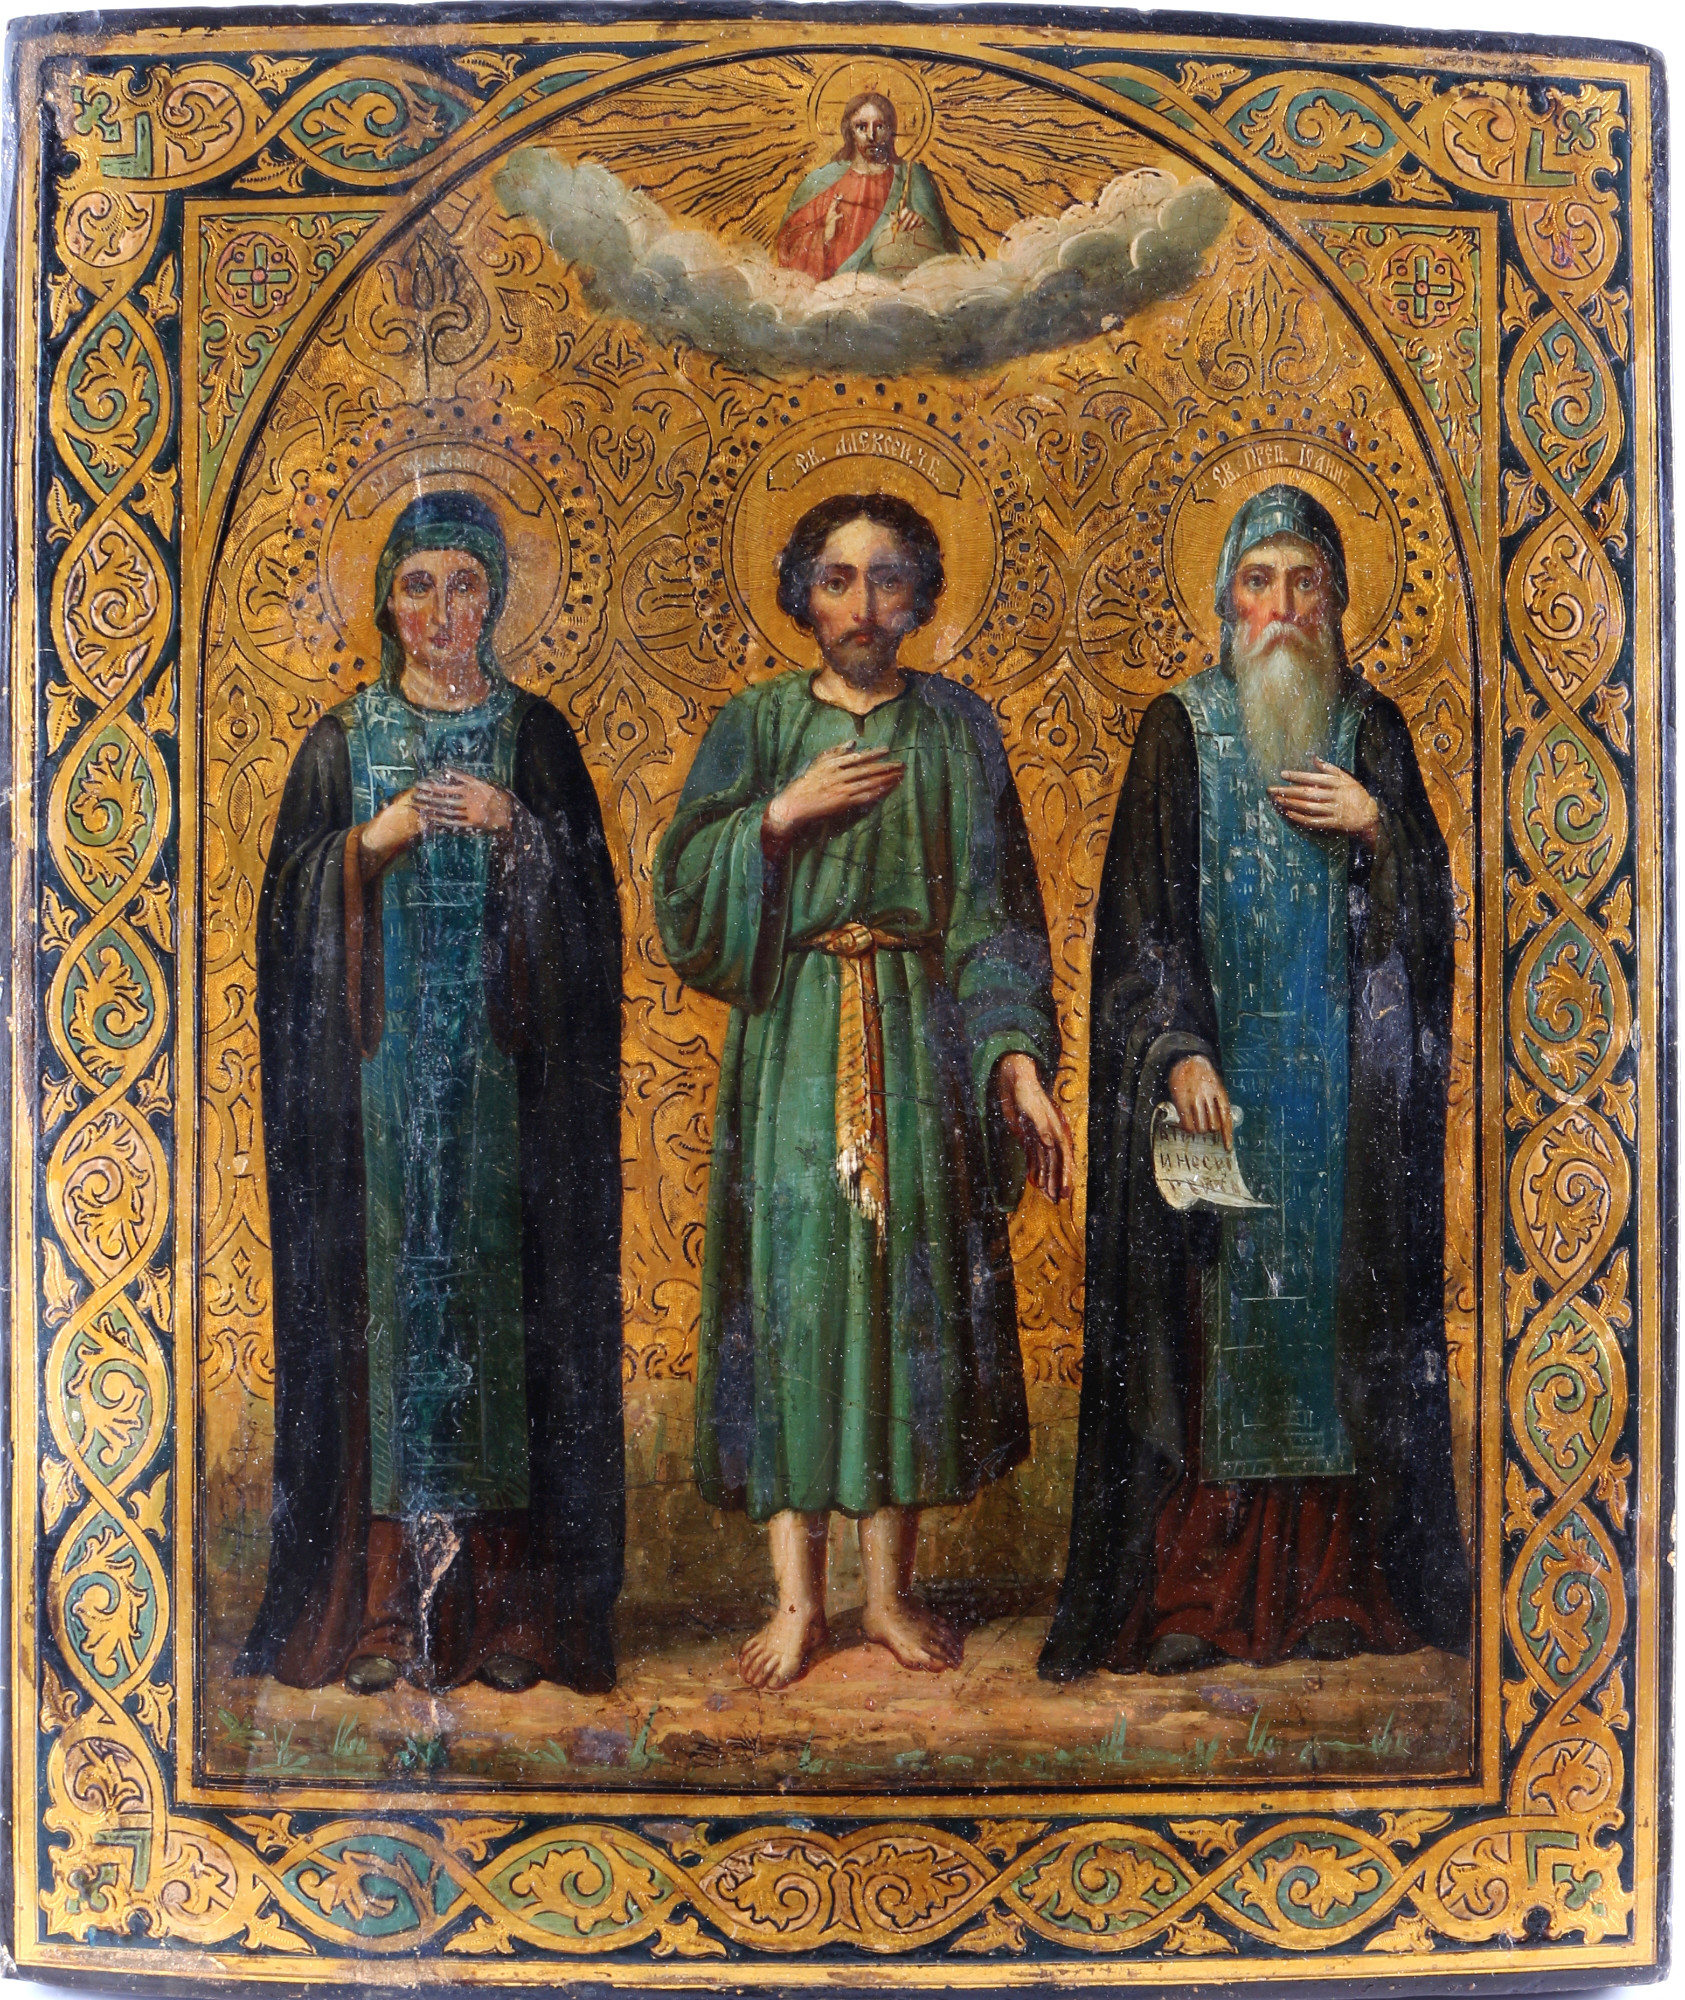 Russian icon with three saints 19th century, Russland Ikone mit 3 Heiligen 19. Jahrhundert,